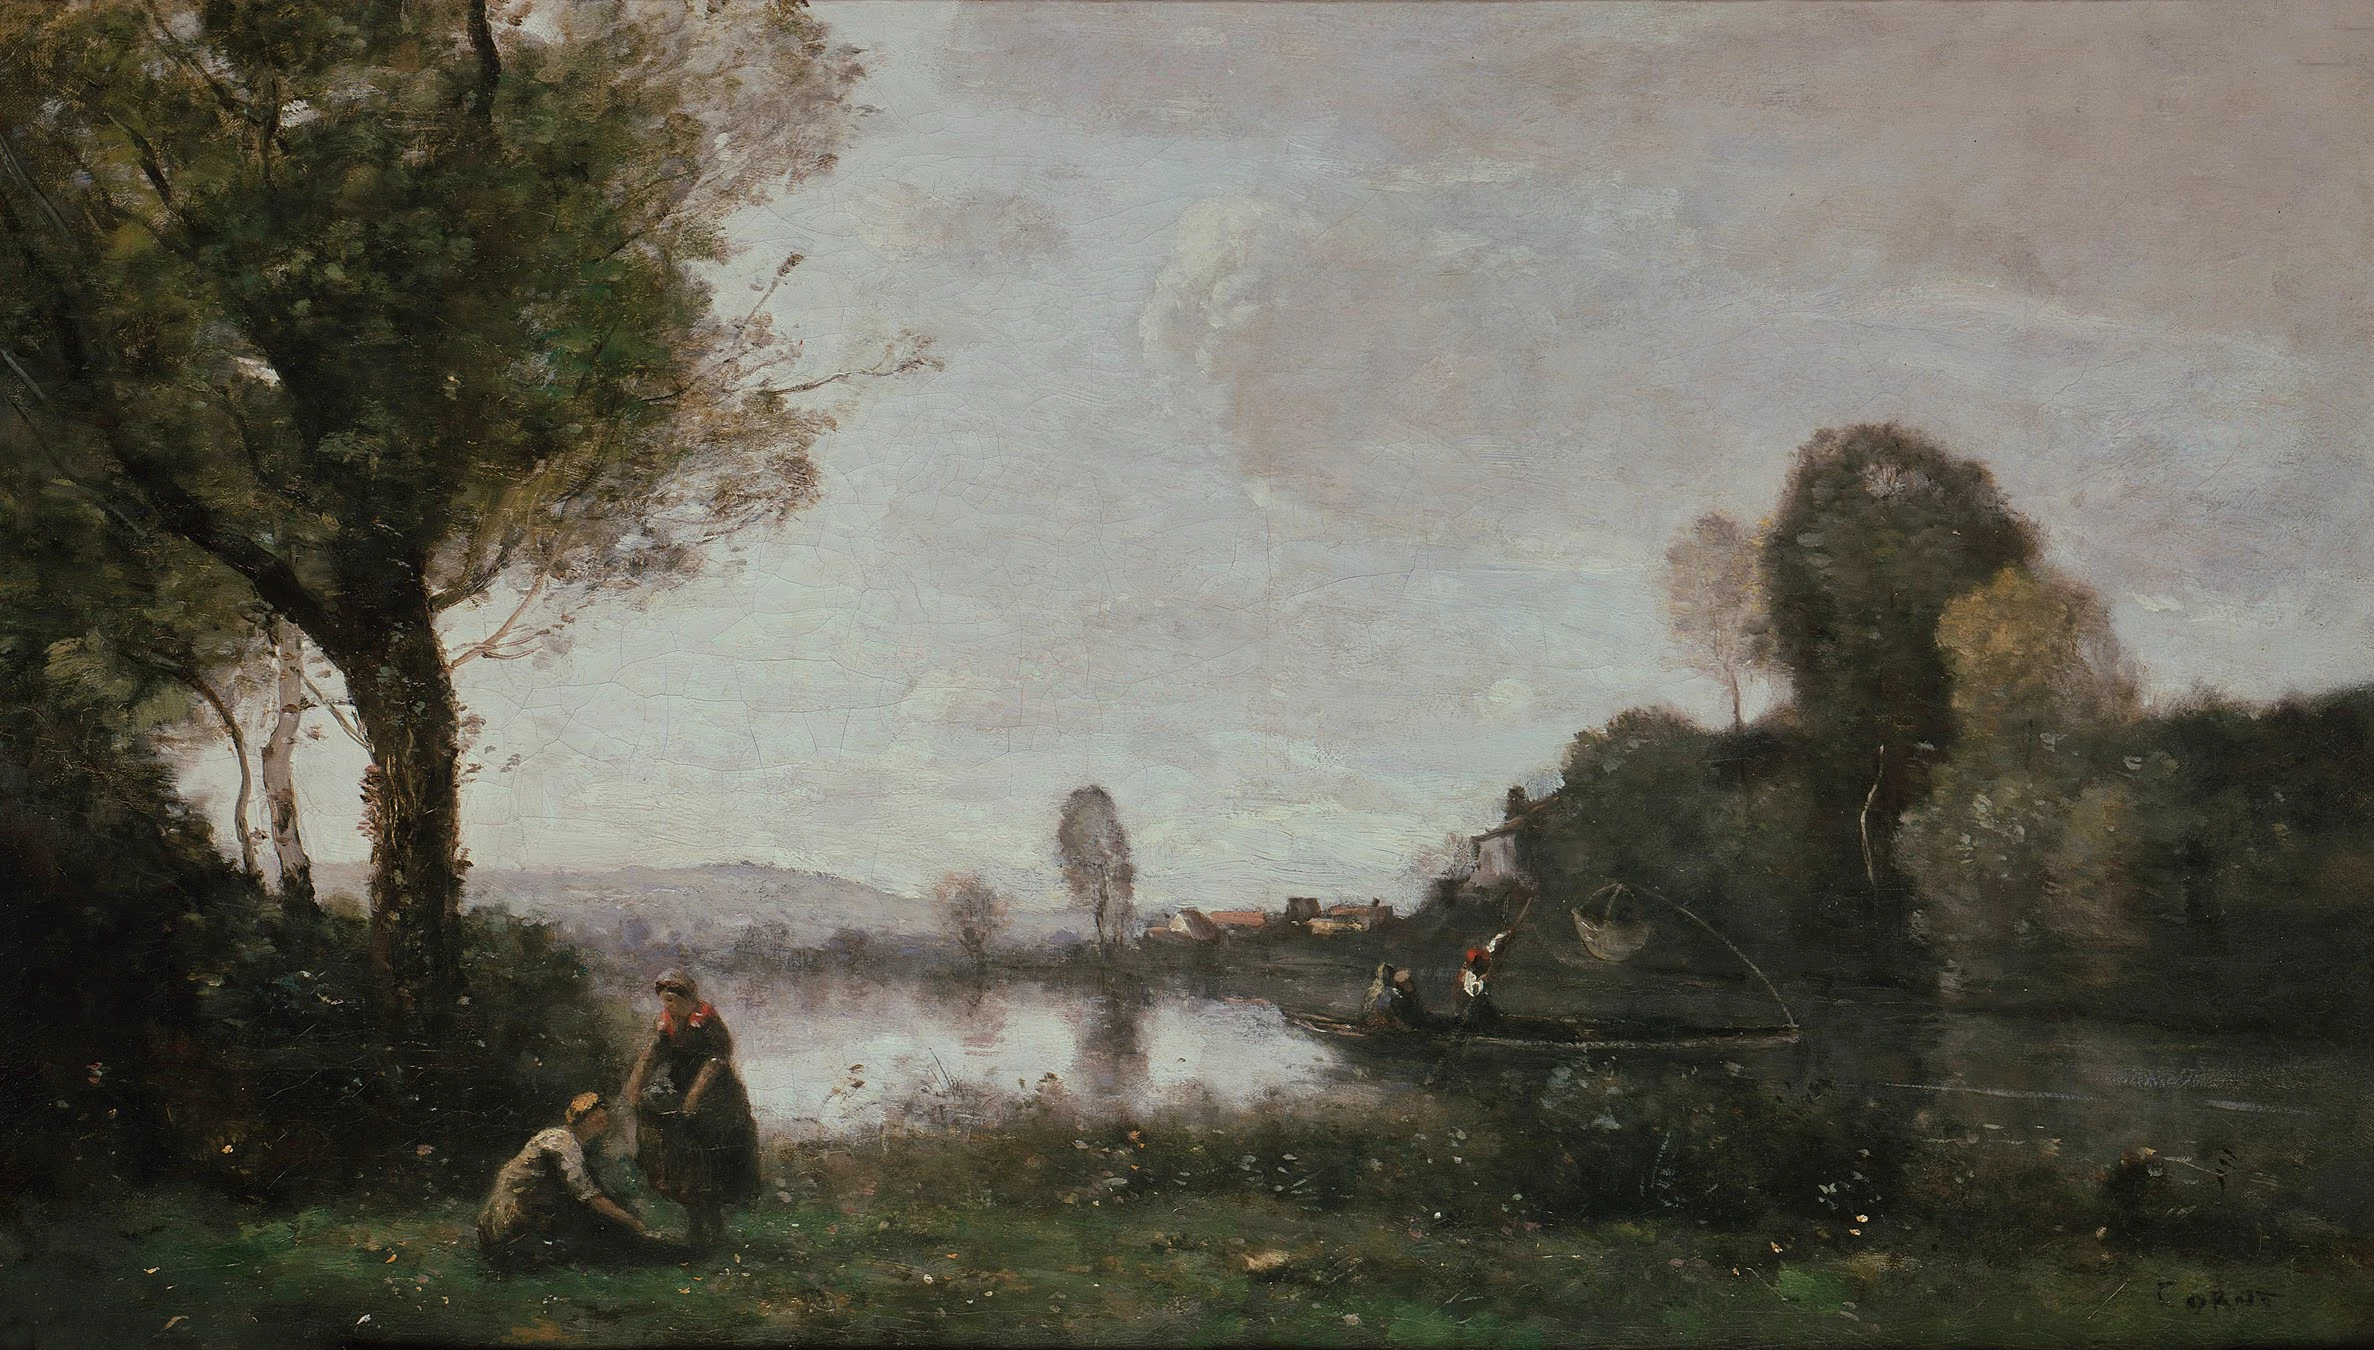 Seine Landscape Near Chatou, Jean-Baptiste Camille Corot